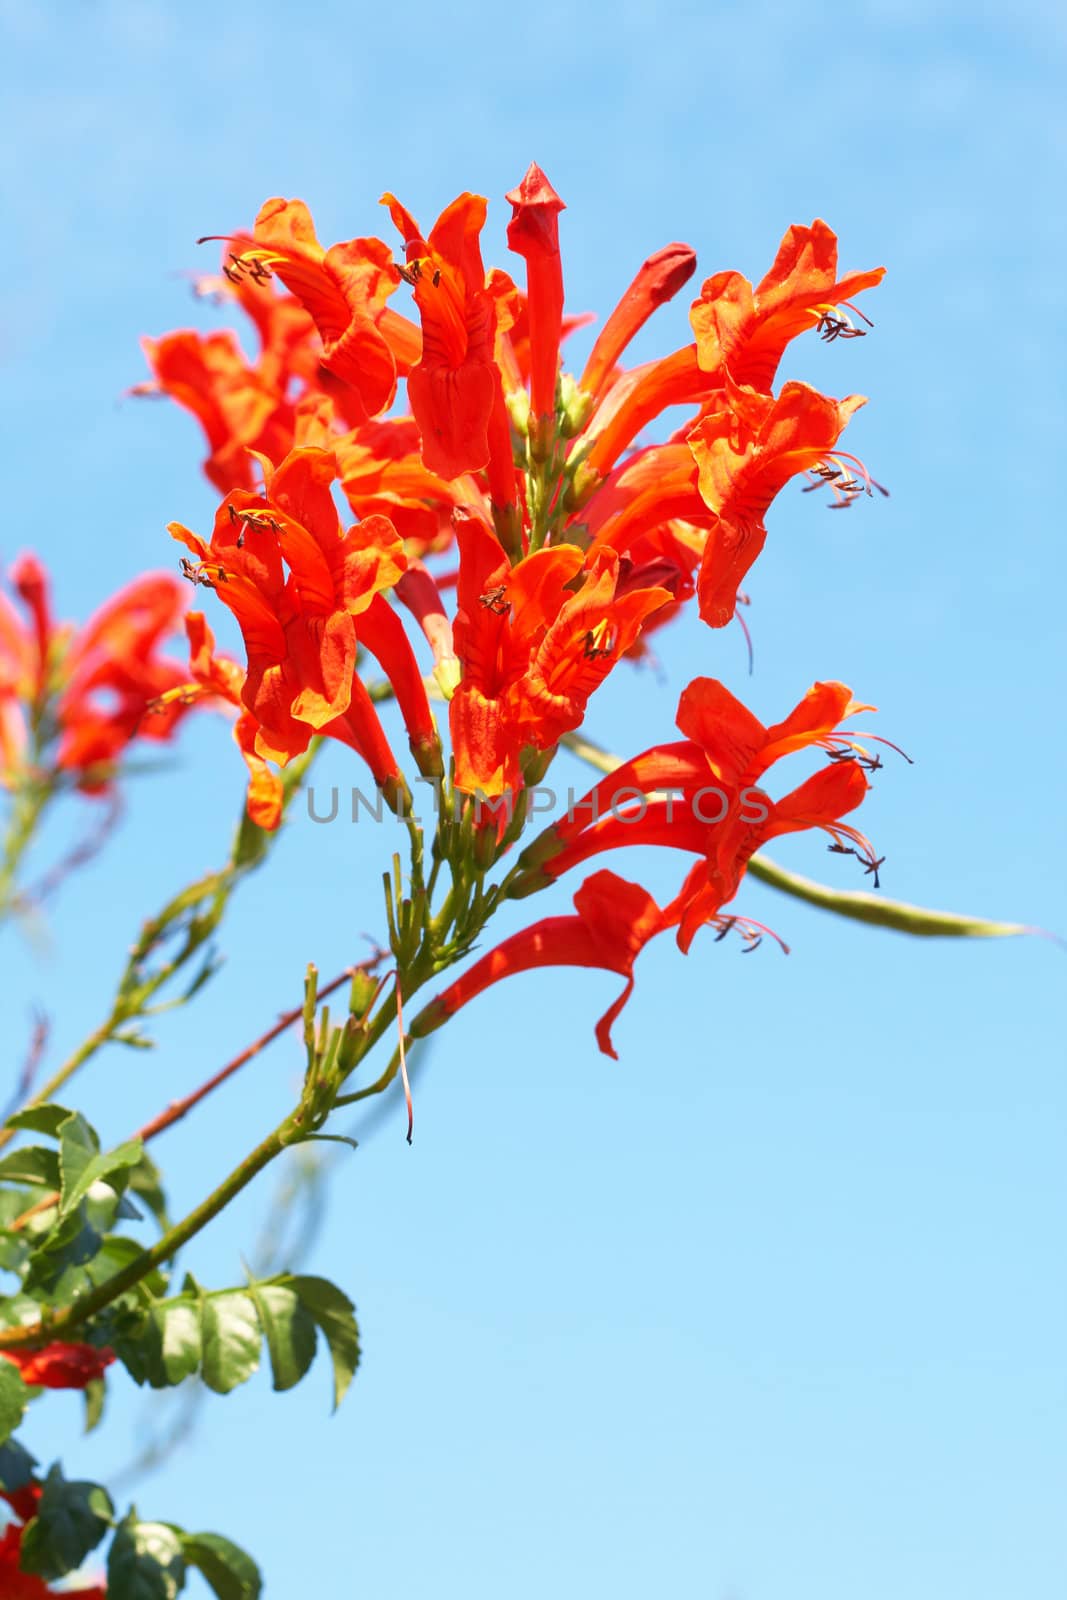 Orange Cape Honey (Melianthus) flowers on blue sky background